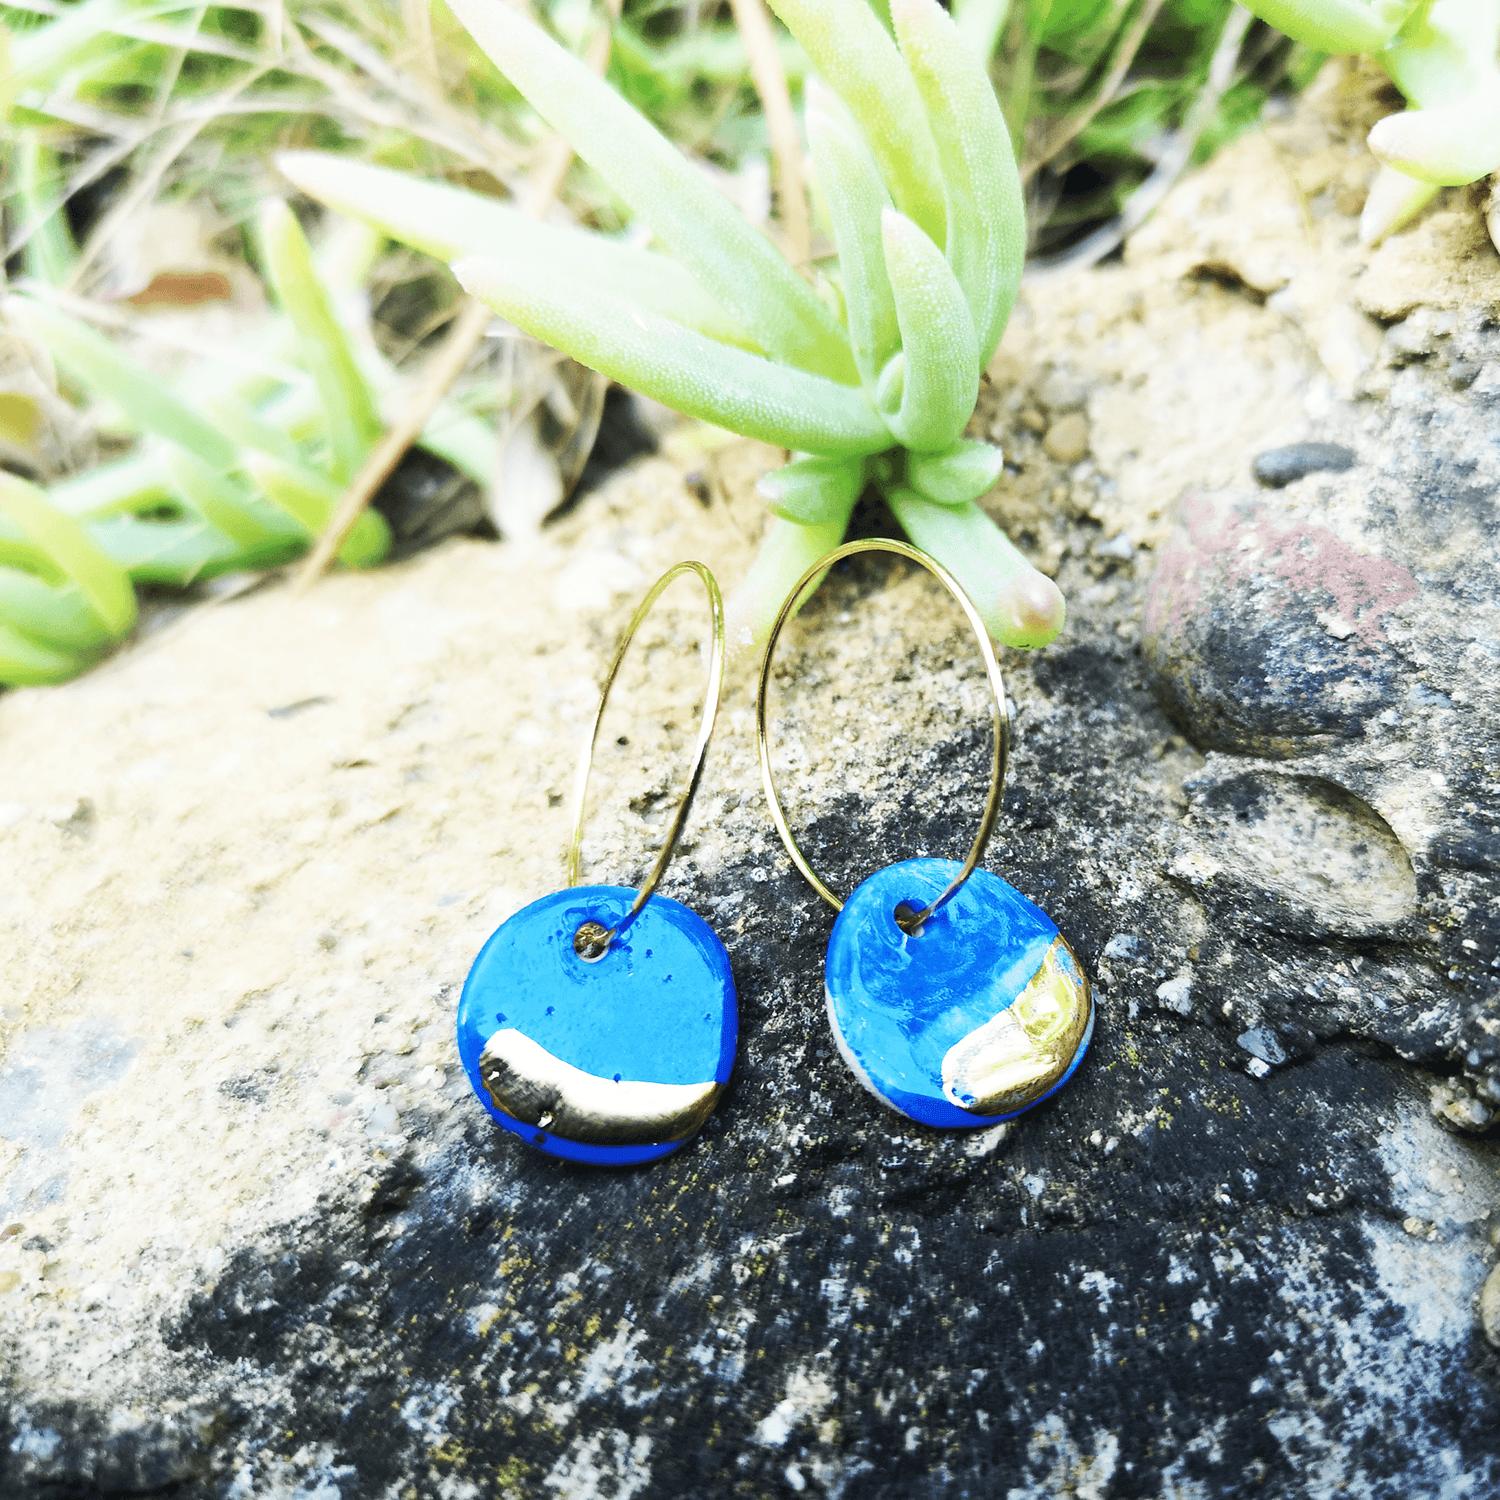 Boucles d'oreilles bleus Klein sur un rocher dans la nature eco responsable